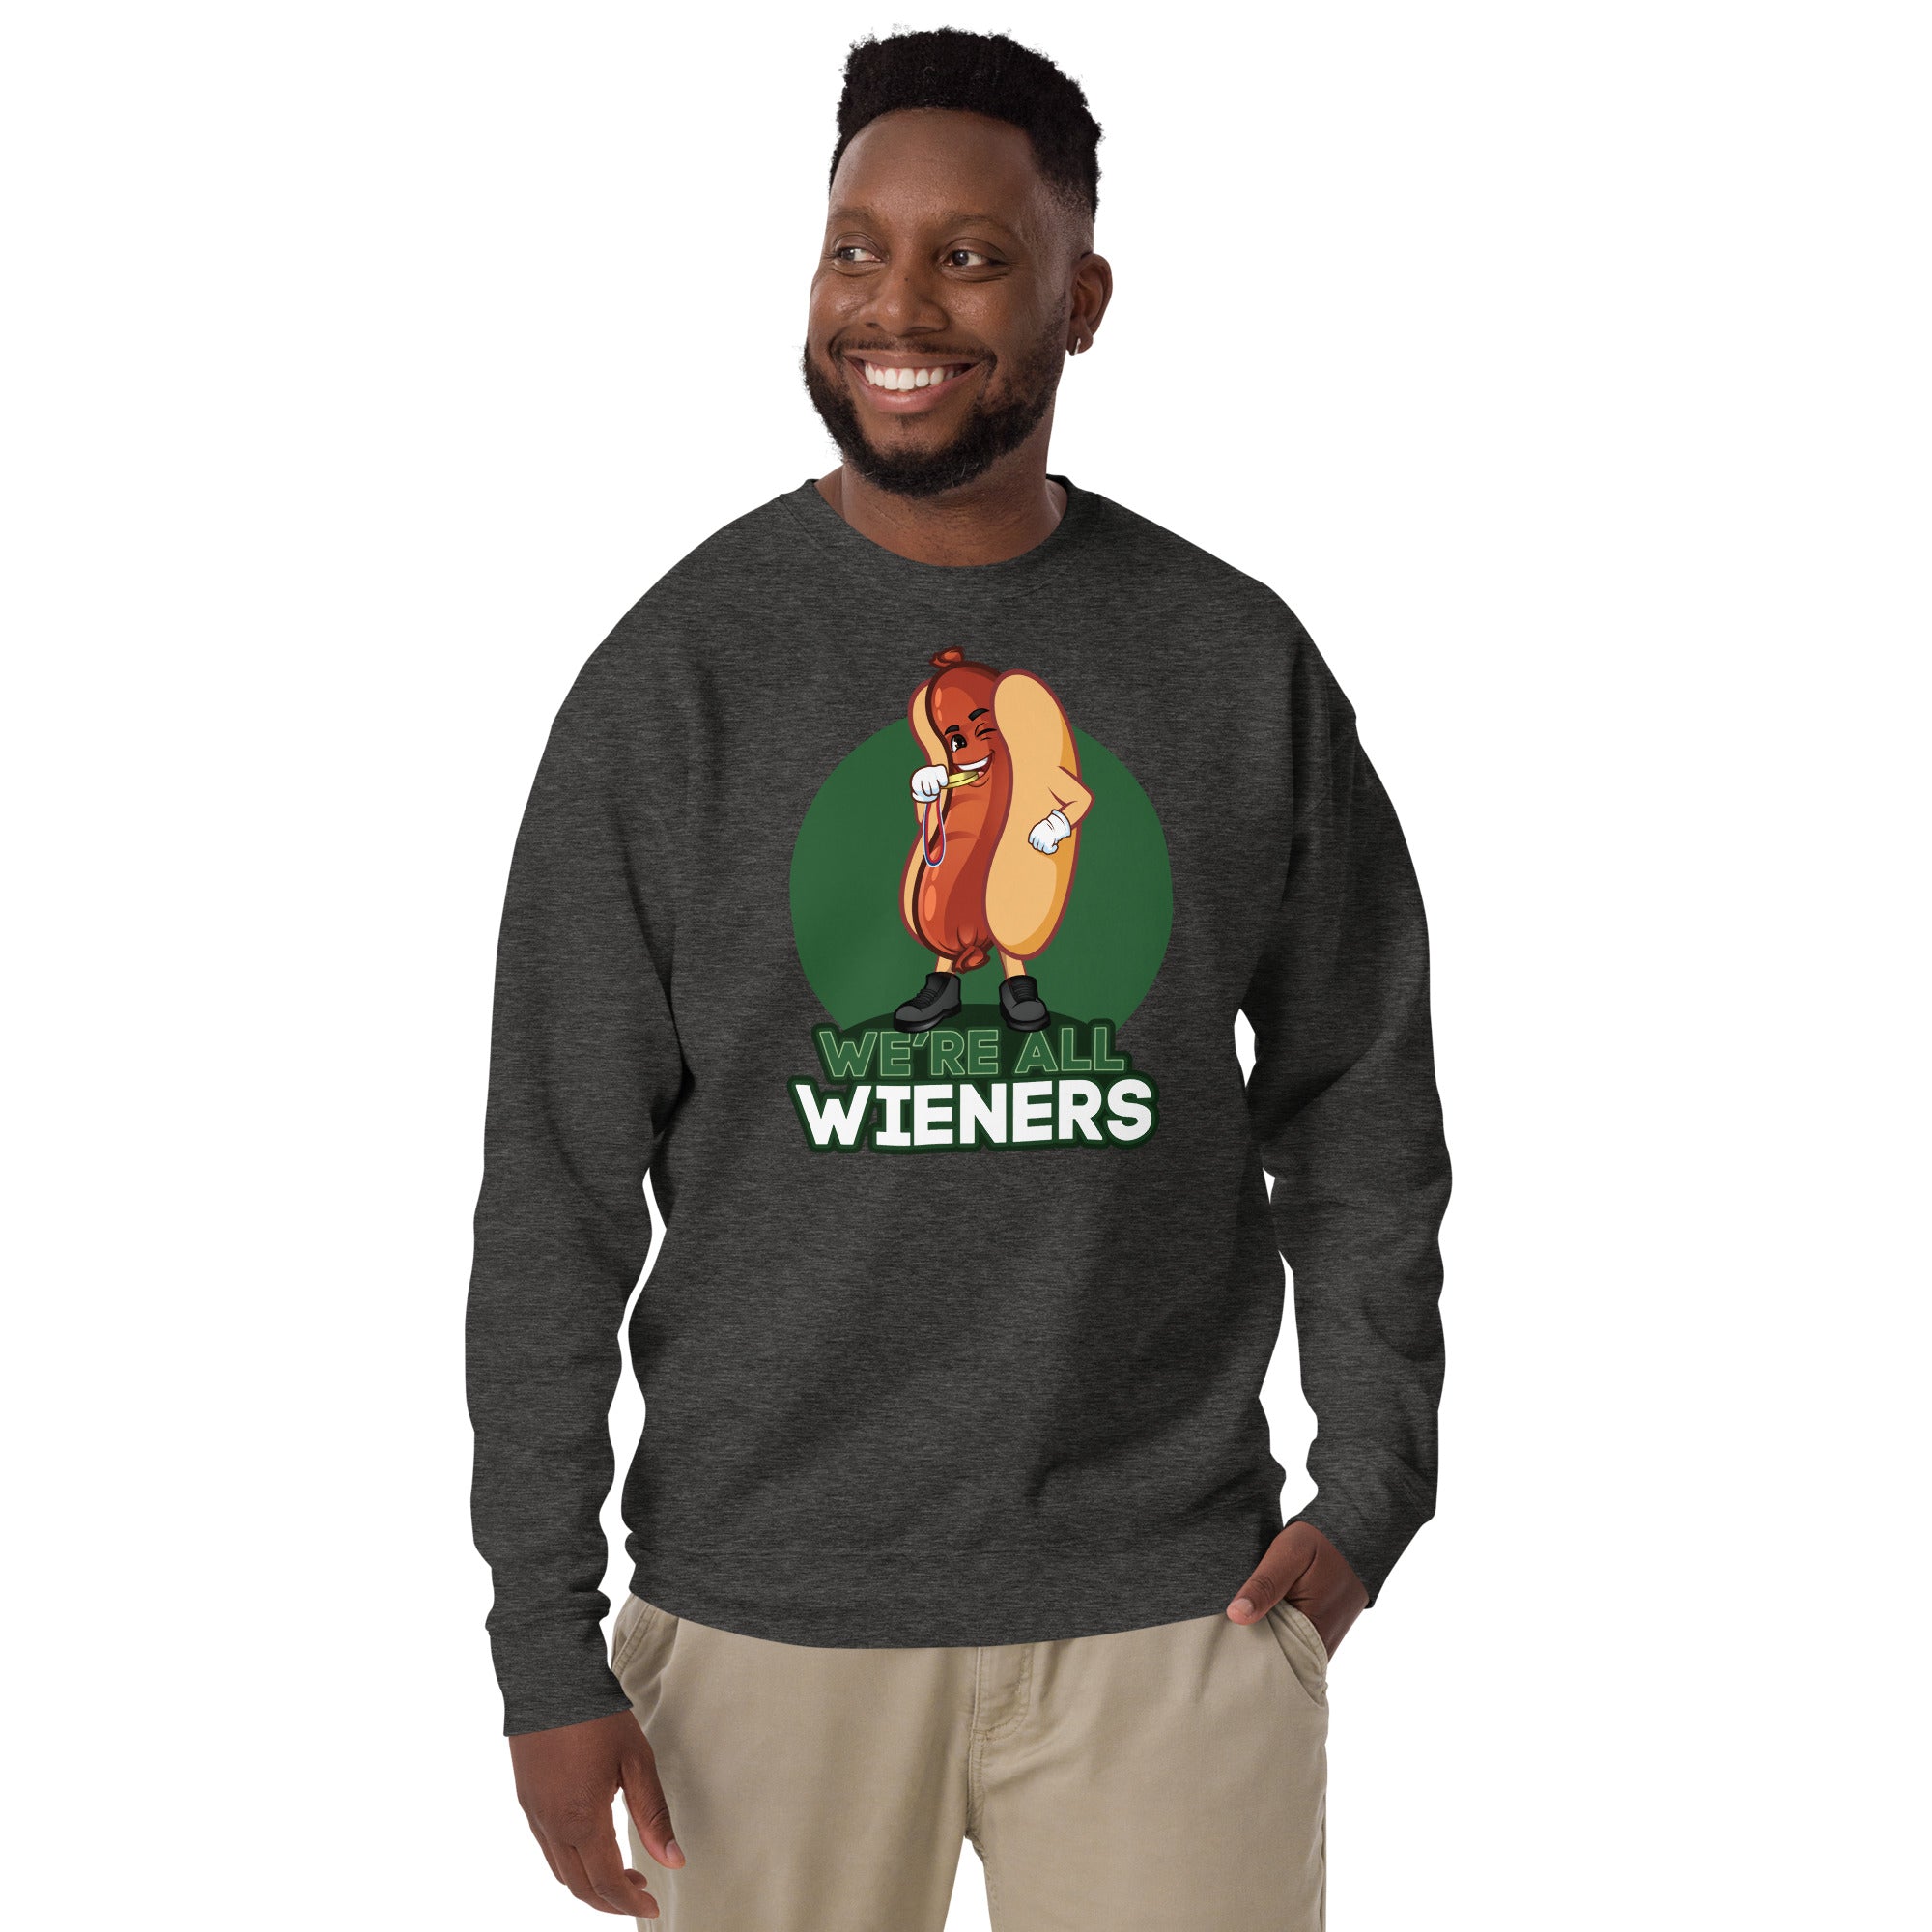 We're All Wieners Men's Heavy Crew Sweatshirt - Green